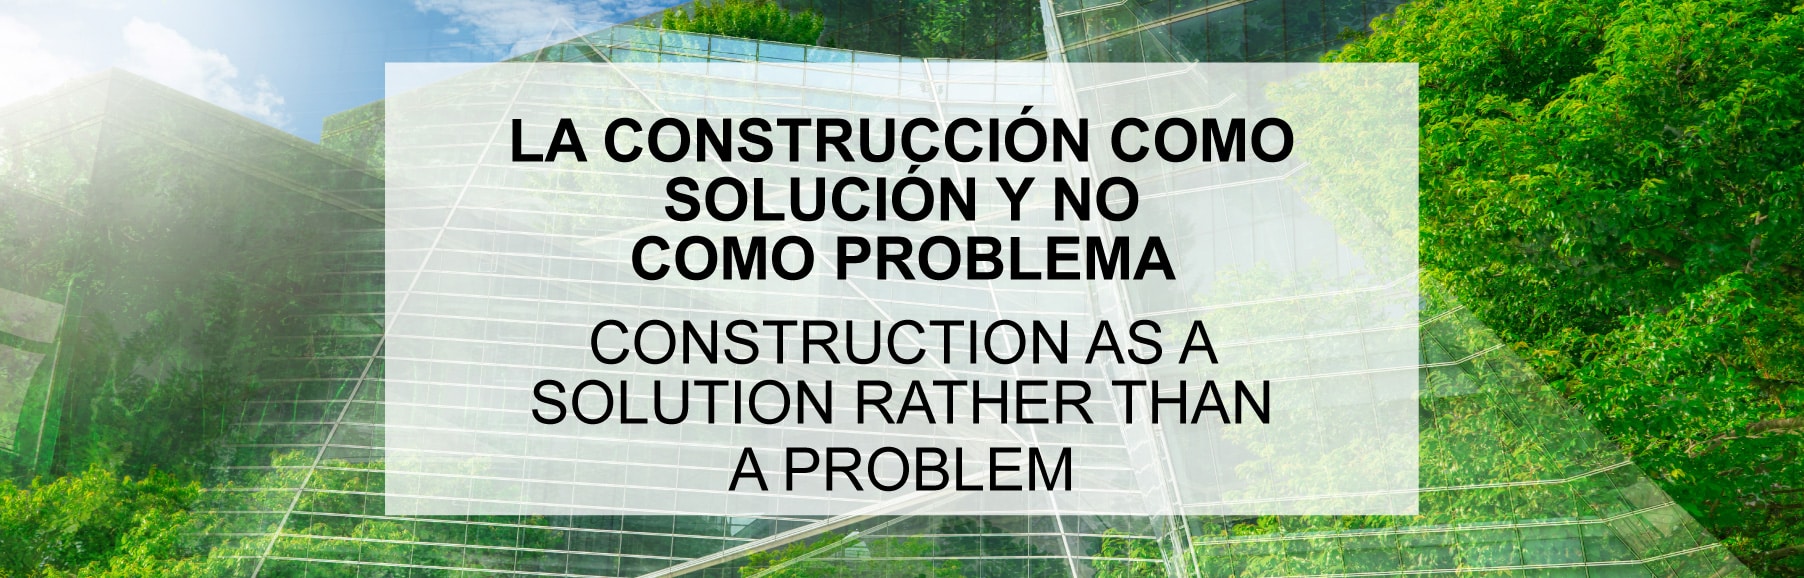 La Construcción como solución y no como problema